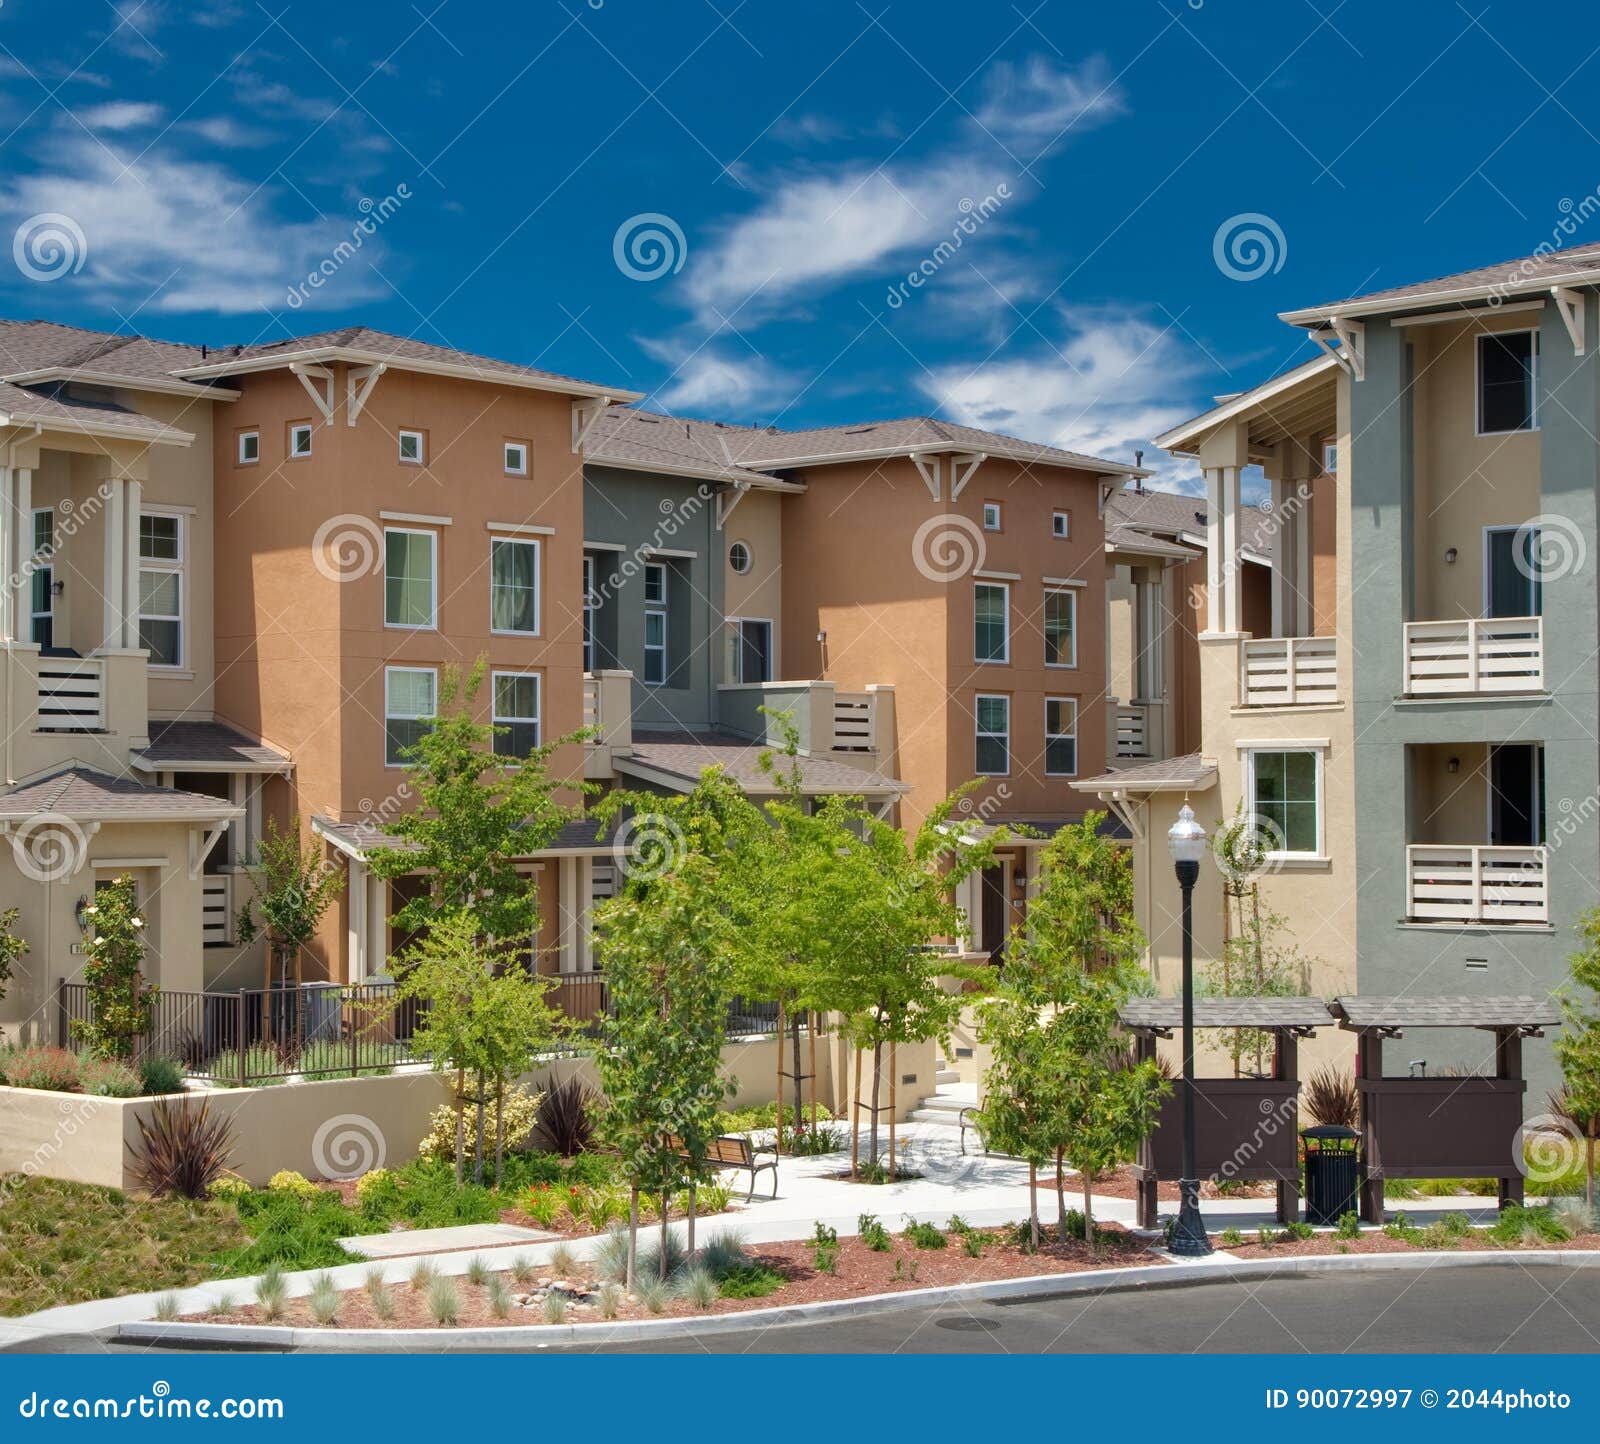 multi-family residential condominium community